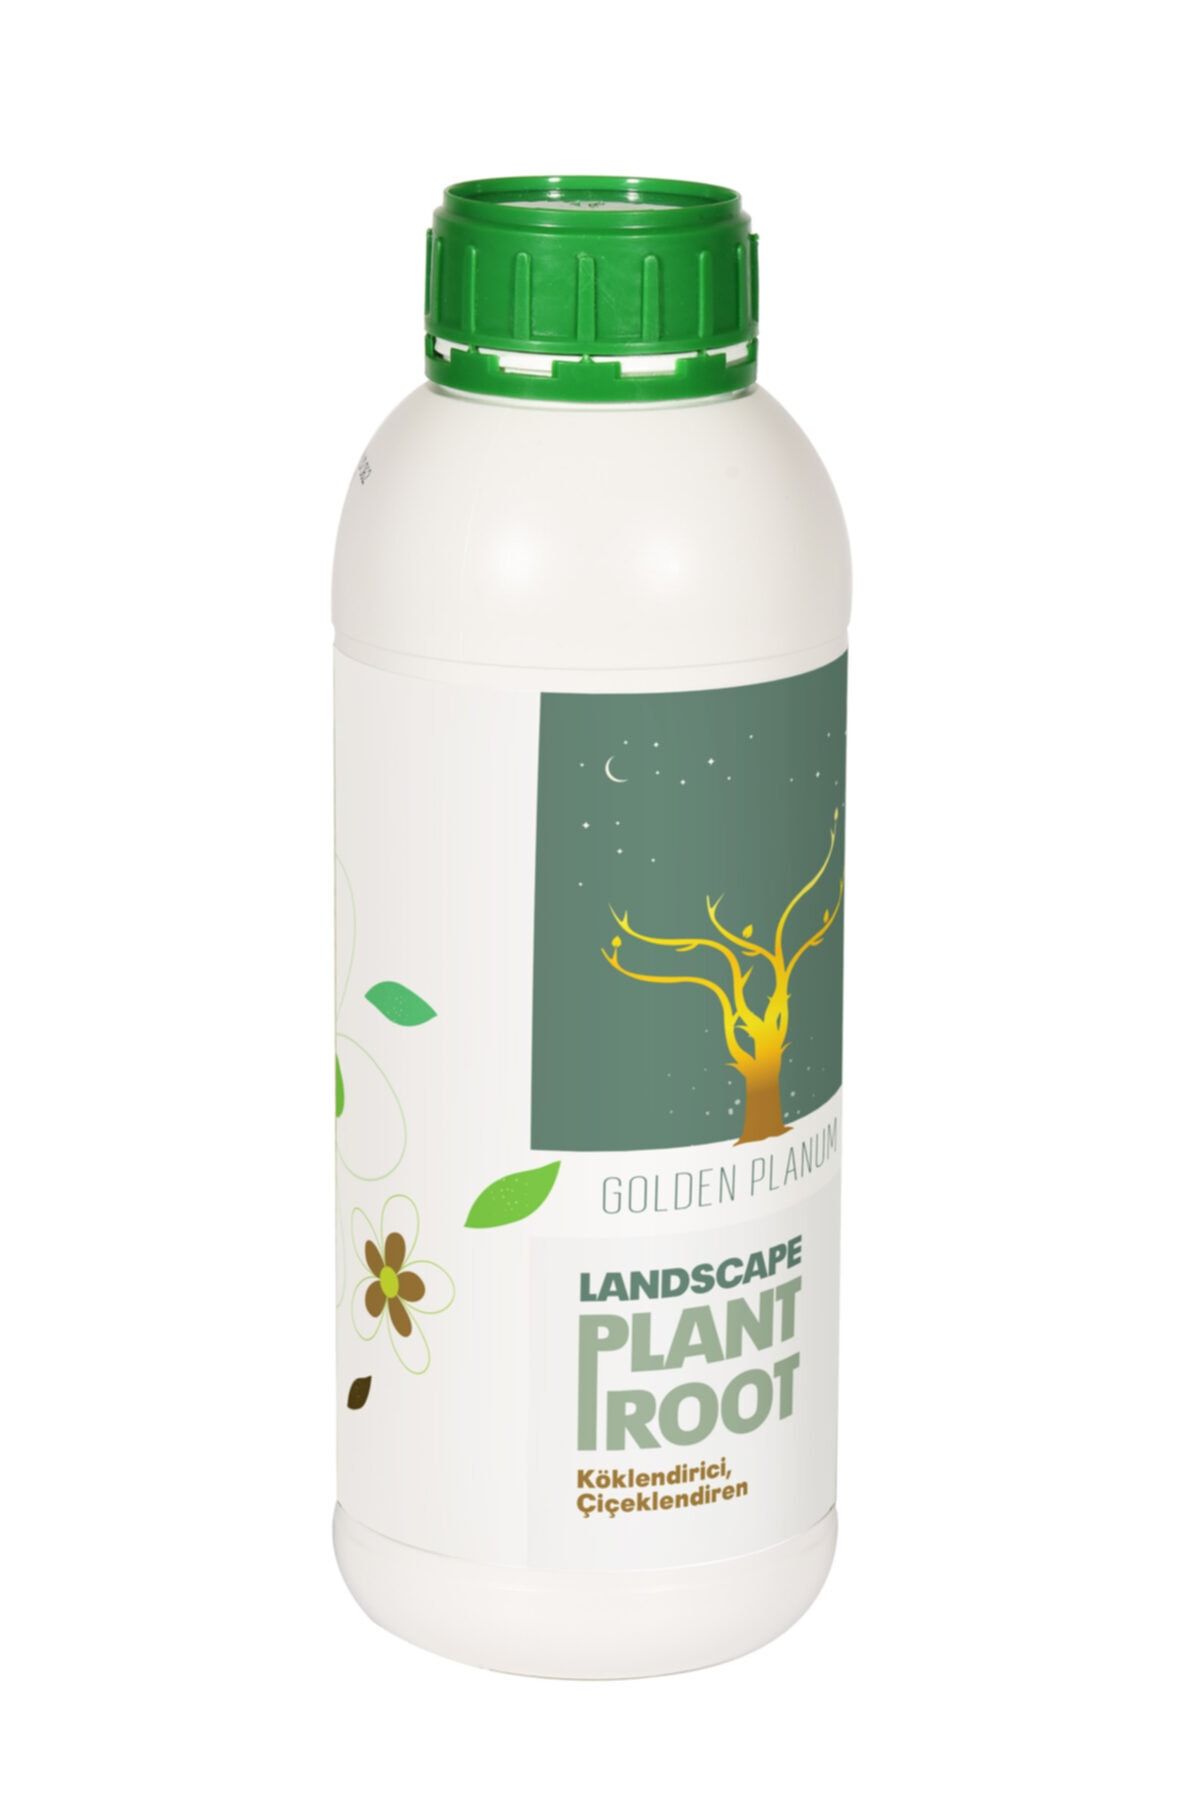 GOLDEN PLANUM Lanscape Plant Root (BİTKİ KÖKLENDİRİCİ) Tüm Bitkiler Için Köklendirici Sıvı Gübre 250 Cc